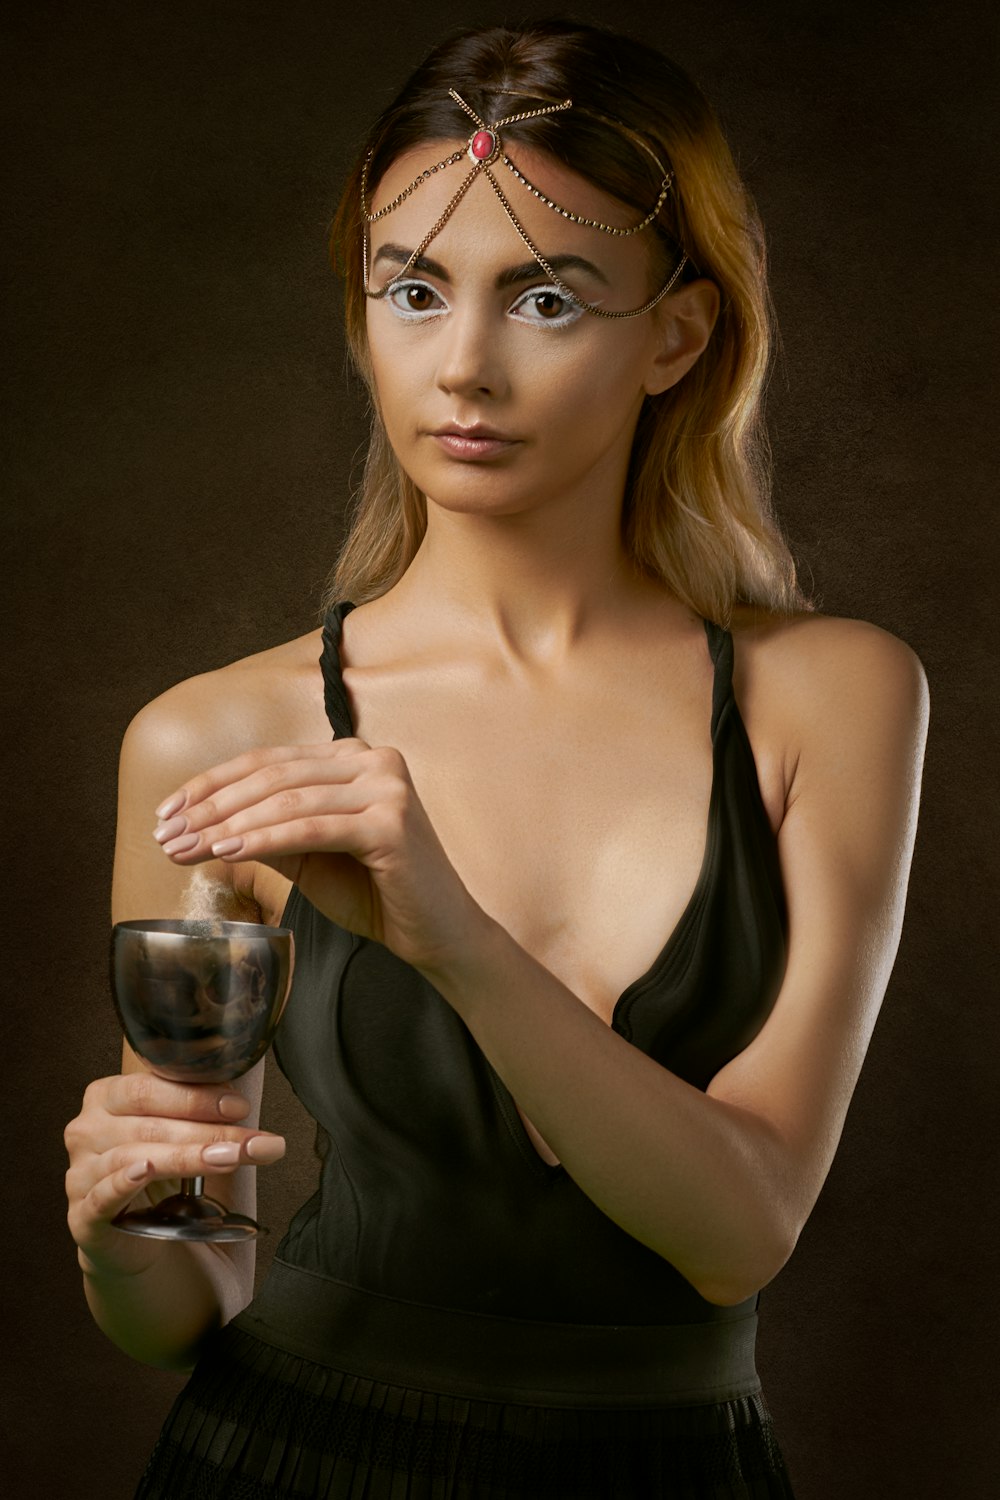 서서 와인 잔을 들고 있는 여자